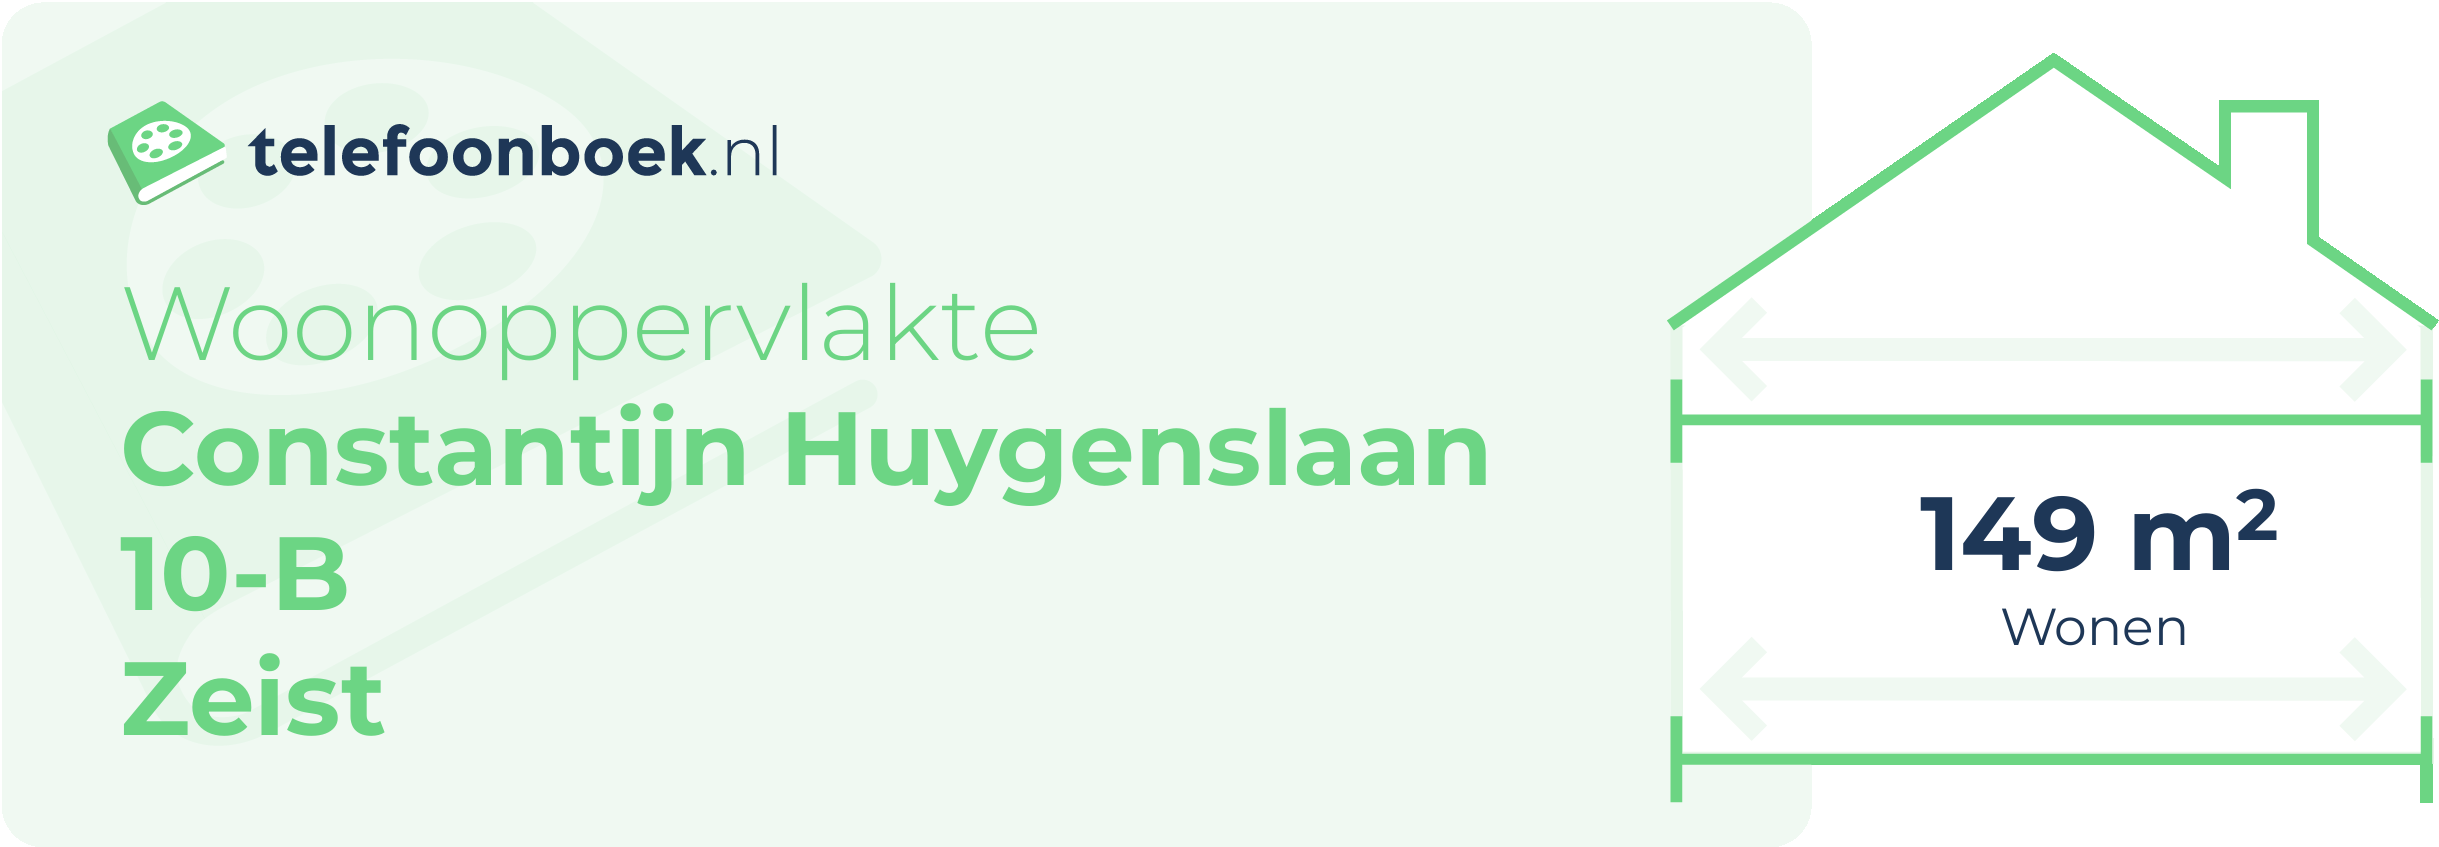 Woonoppervlakte Constantijn Huygenslaan 10-B Zeist